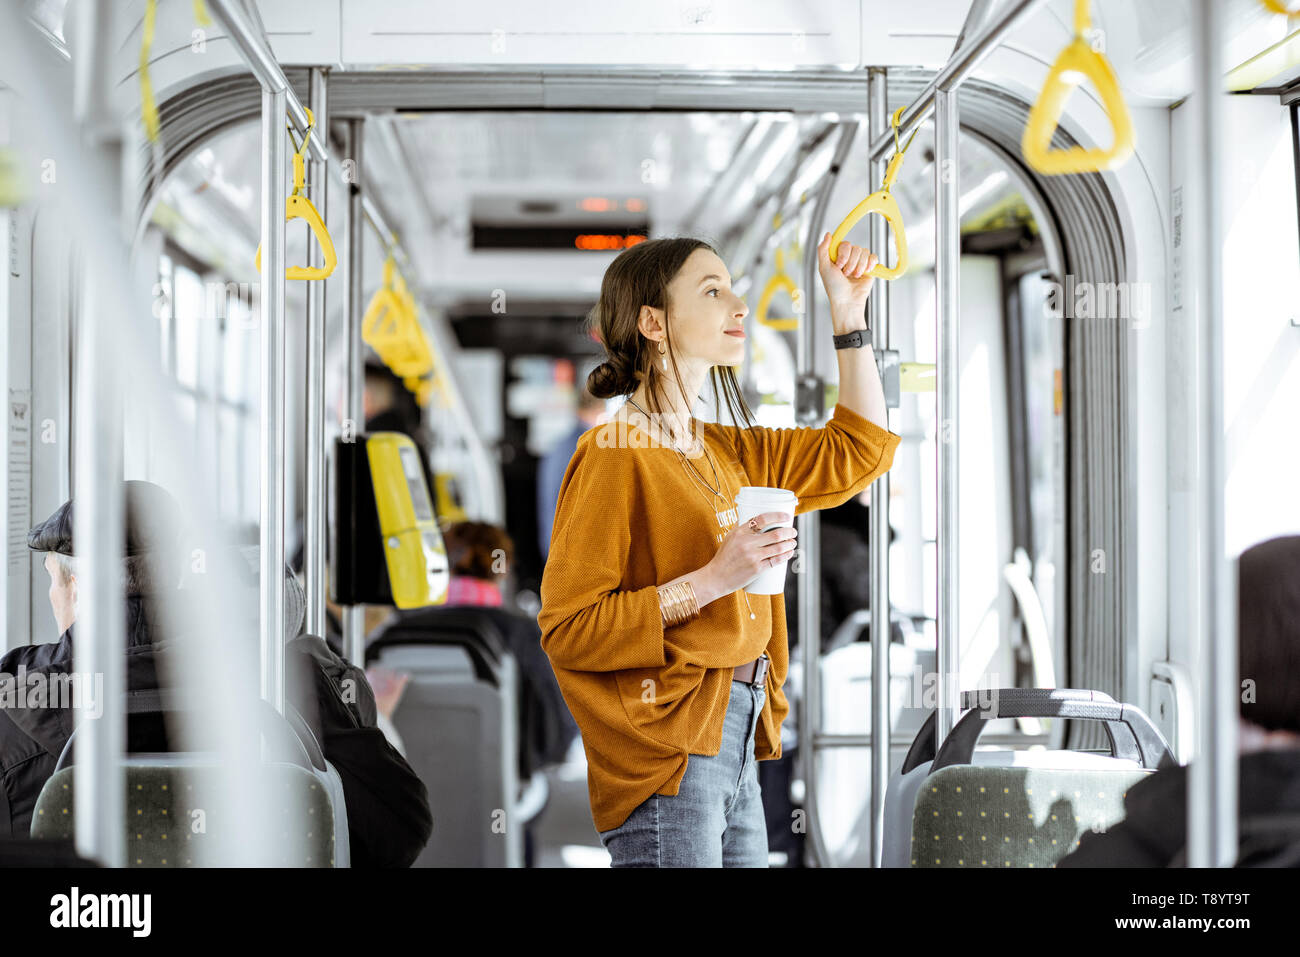 Junge Frau Passagier genießen Reise an die öffentlichen Verkehrsmittel, mit Kaffee in der modernen Straßenbahn stehend Stockfoto